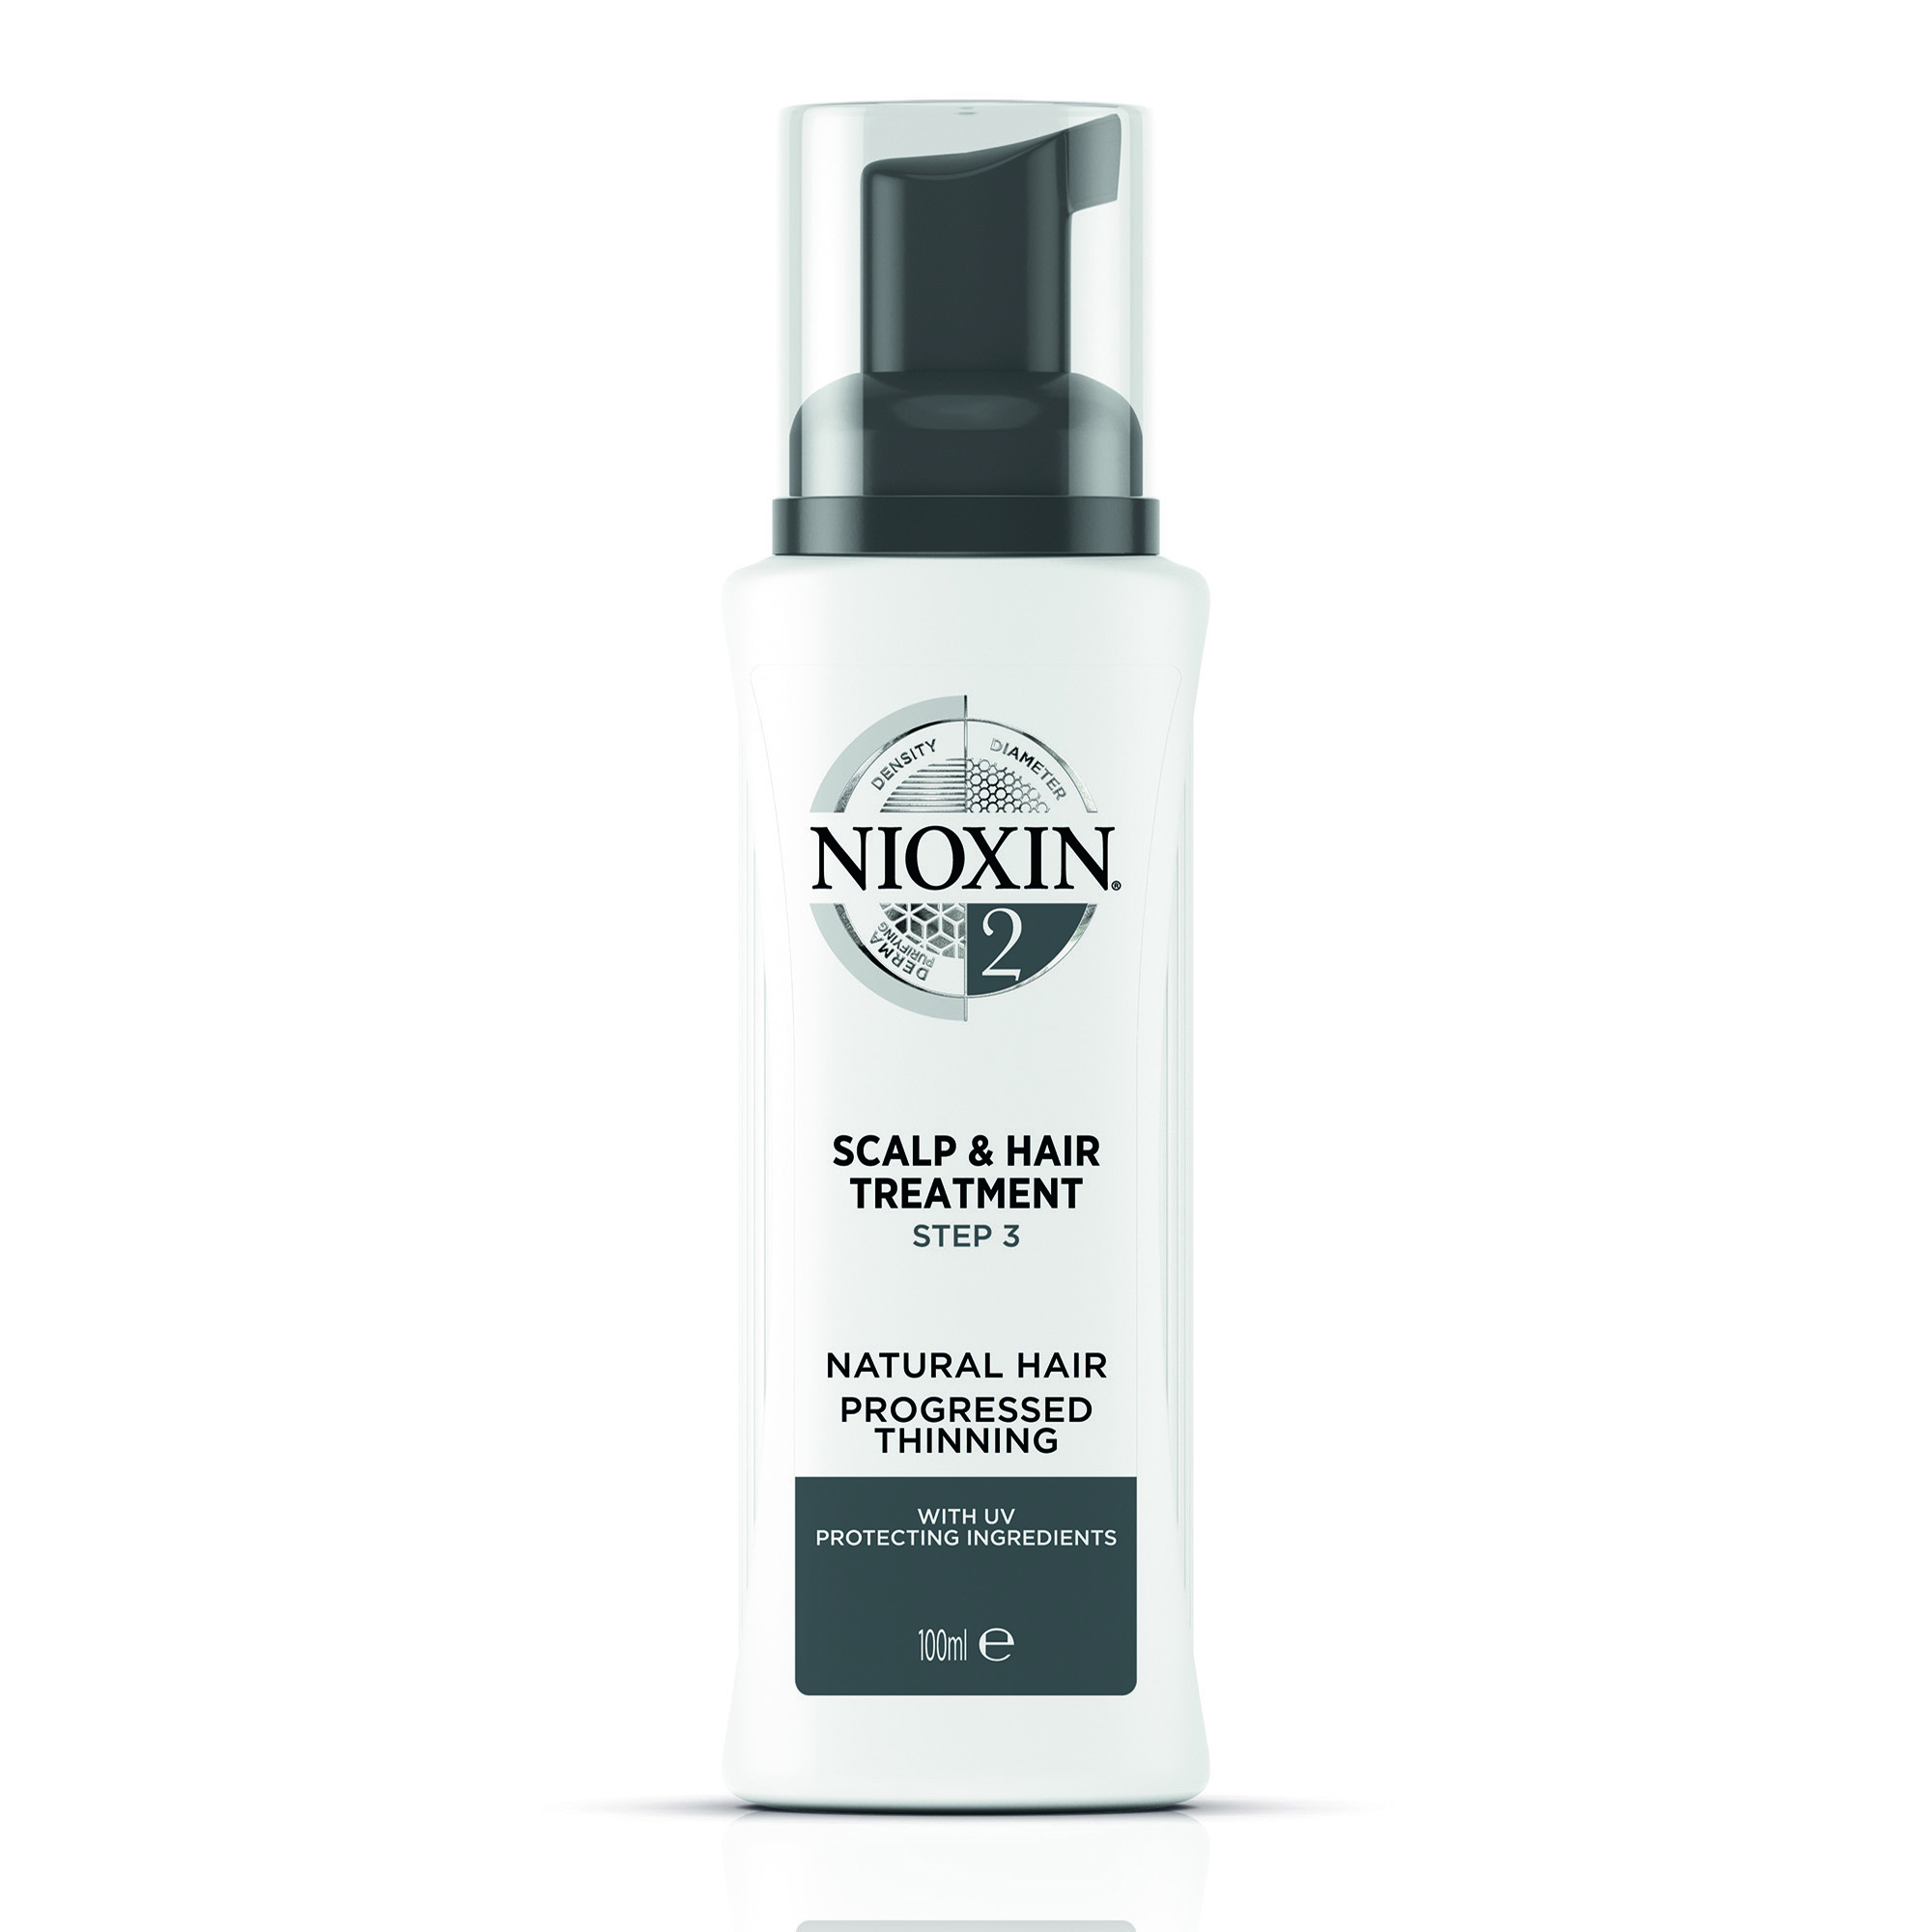 NIOXIN Маска питательная для тонких натуральных, заметно редеющих волос, Система 2, 100 мл prettian маска для лица с экстрактом водорослей хидзики питательная 22 0